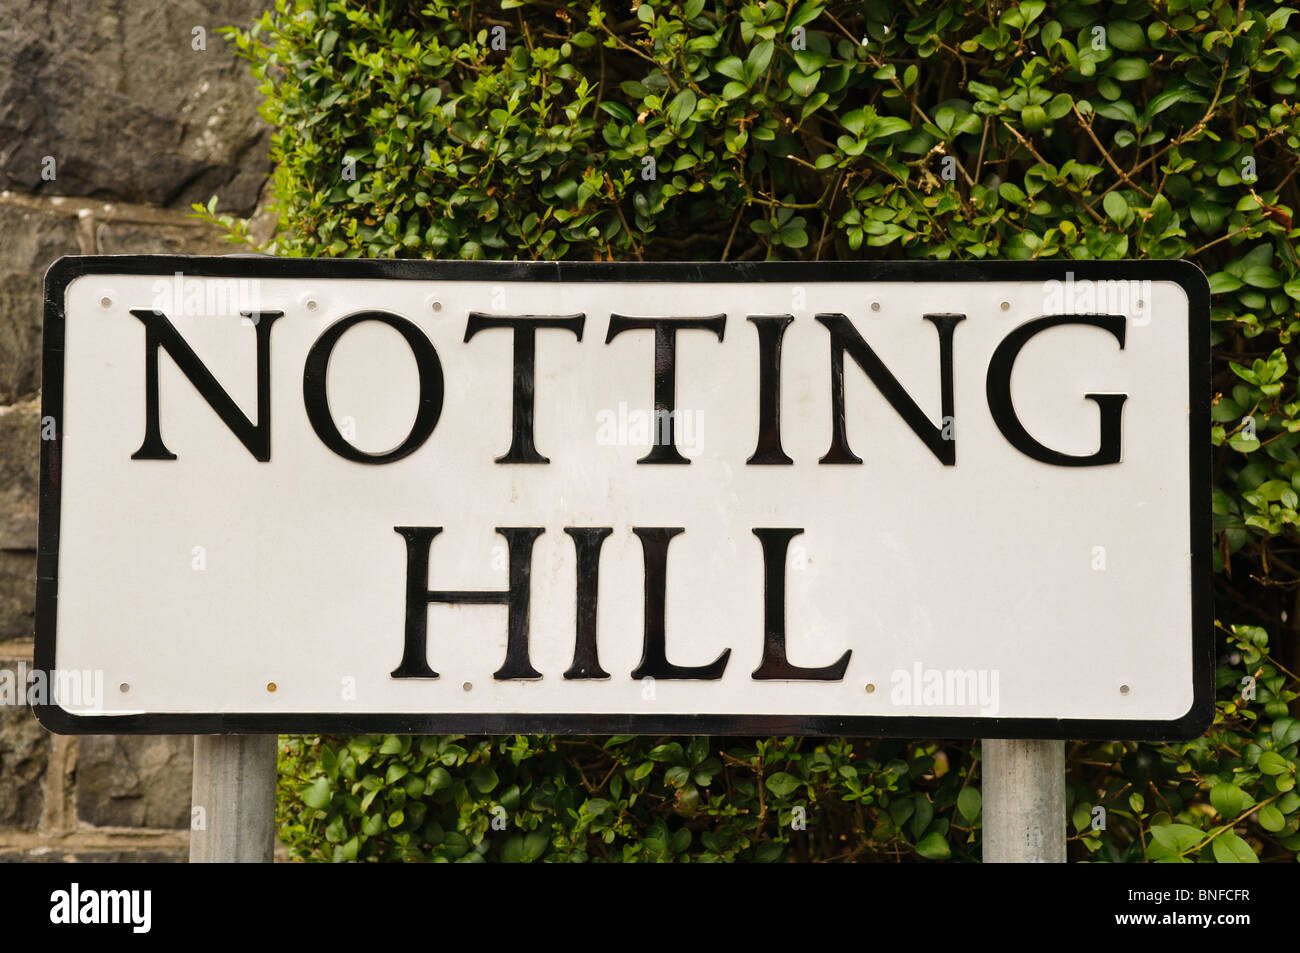 Straßenschild mit der Aufschrift "Notting Hill" Stockfoto